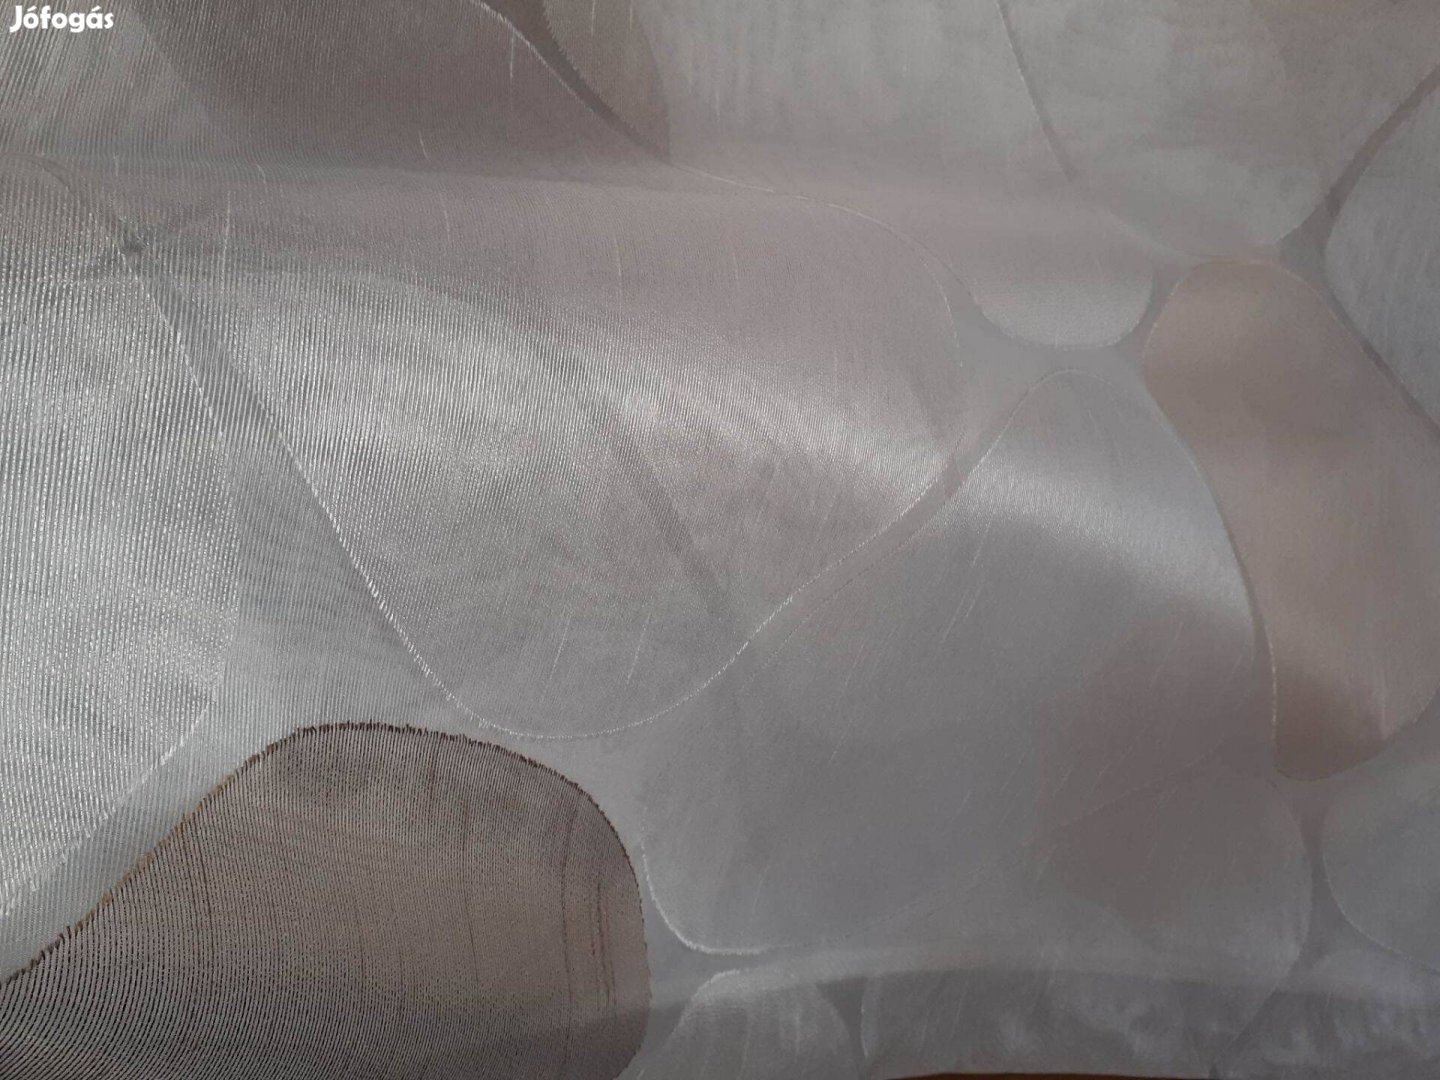 Új fehér nagy foltmintás függöny (10m x 3m)